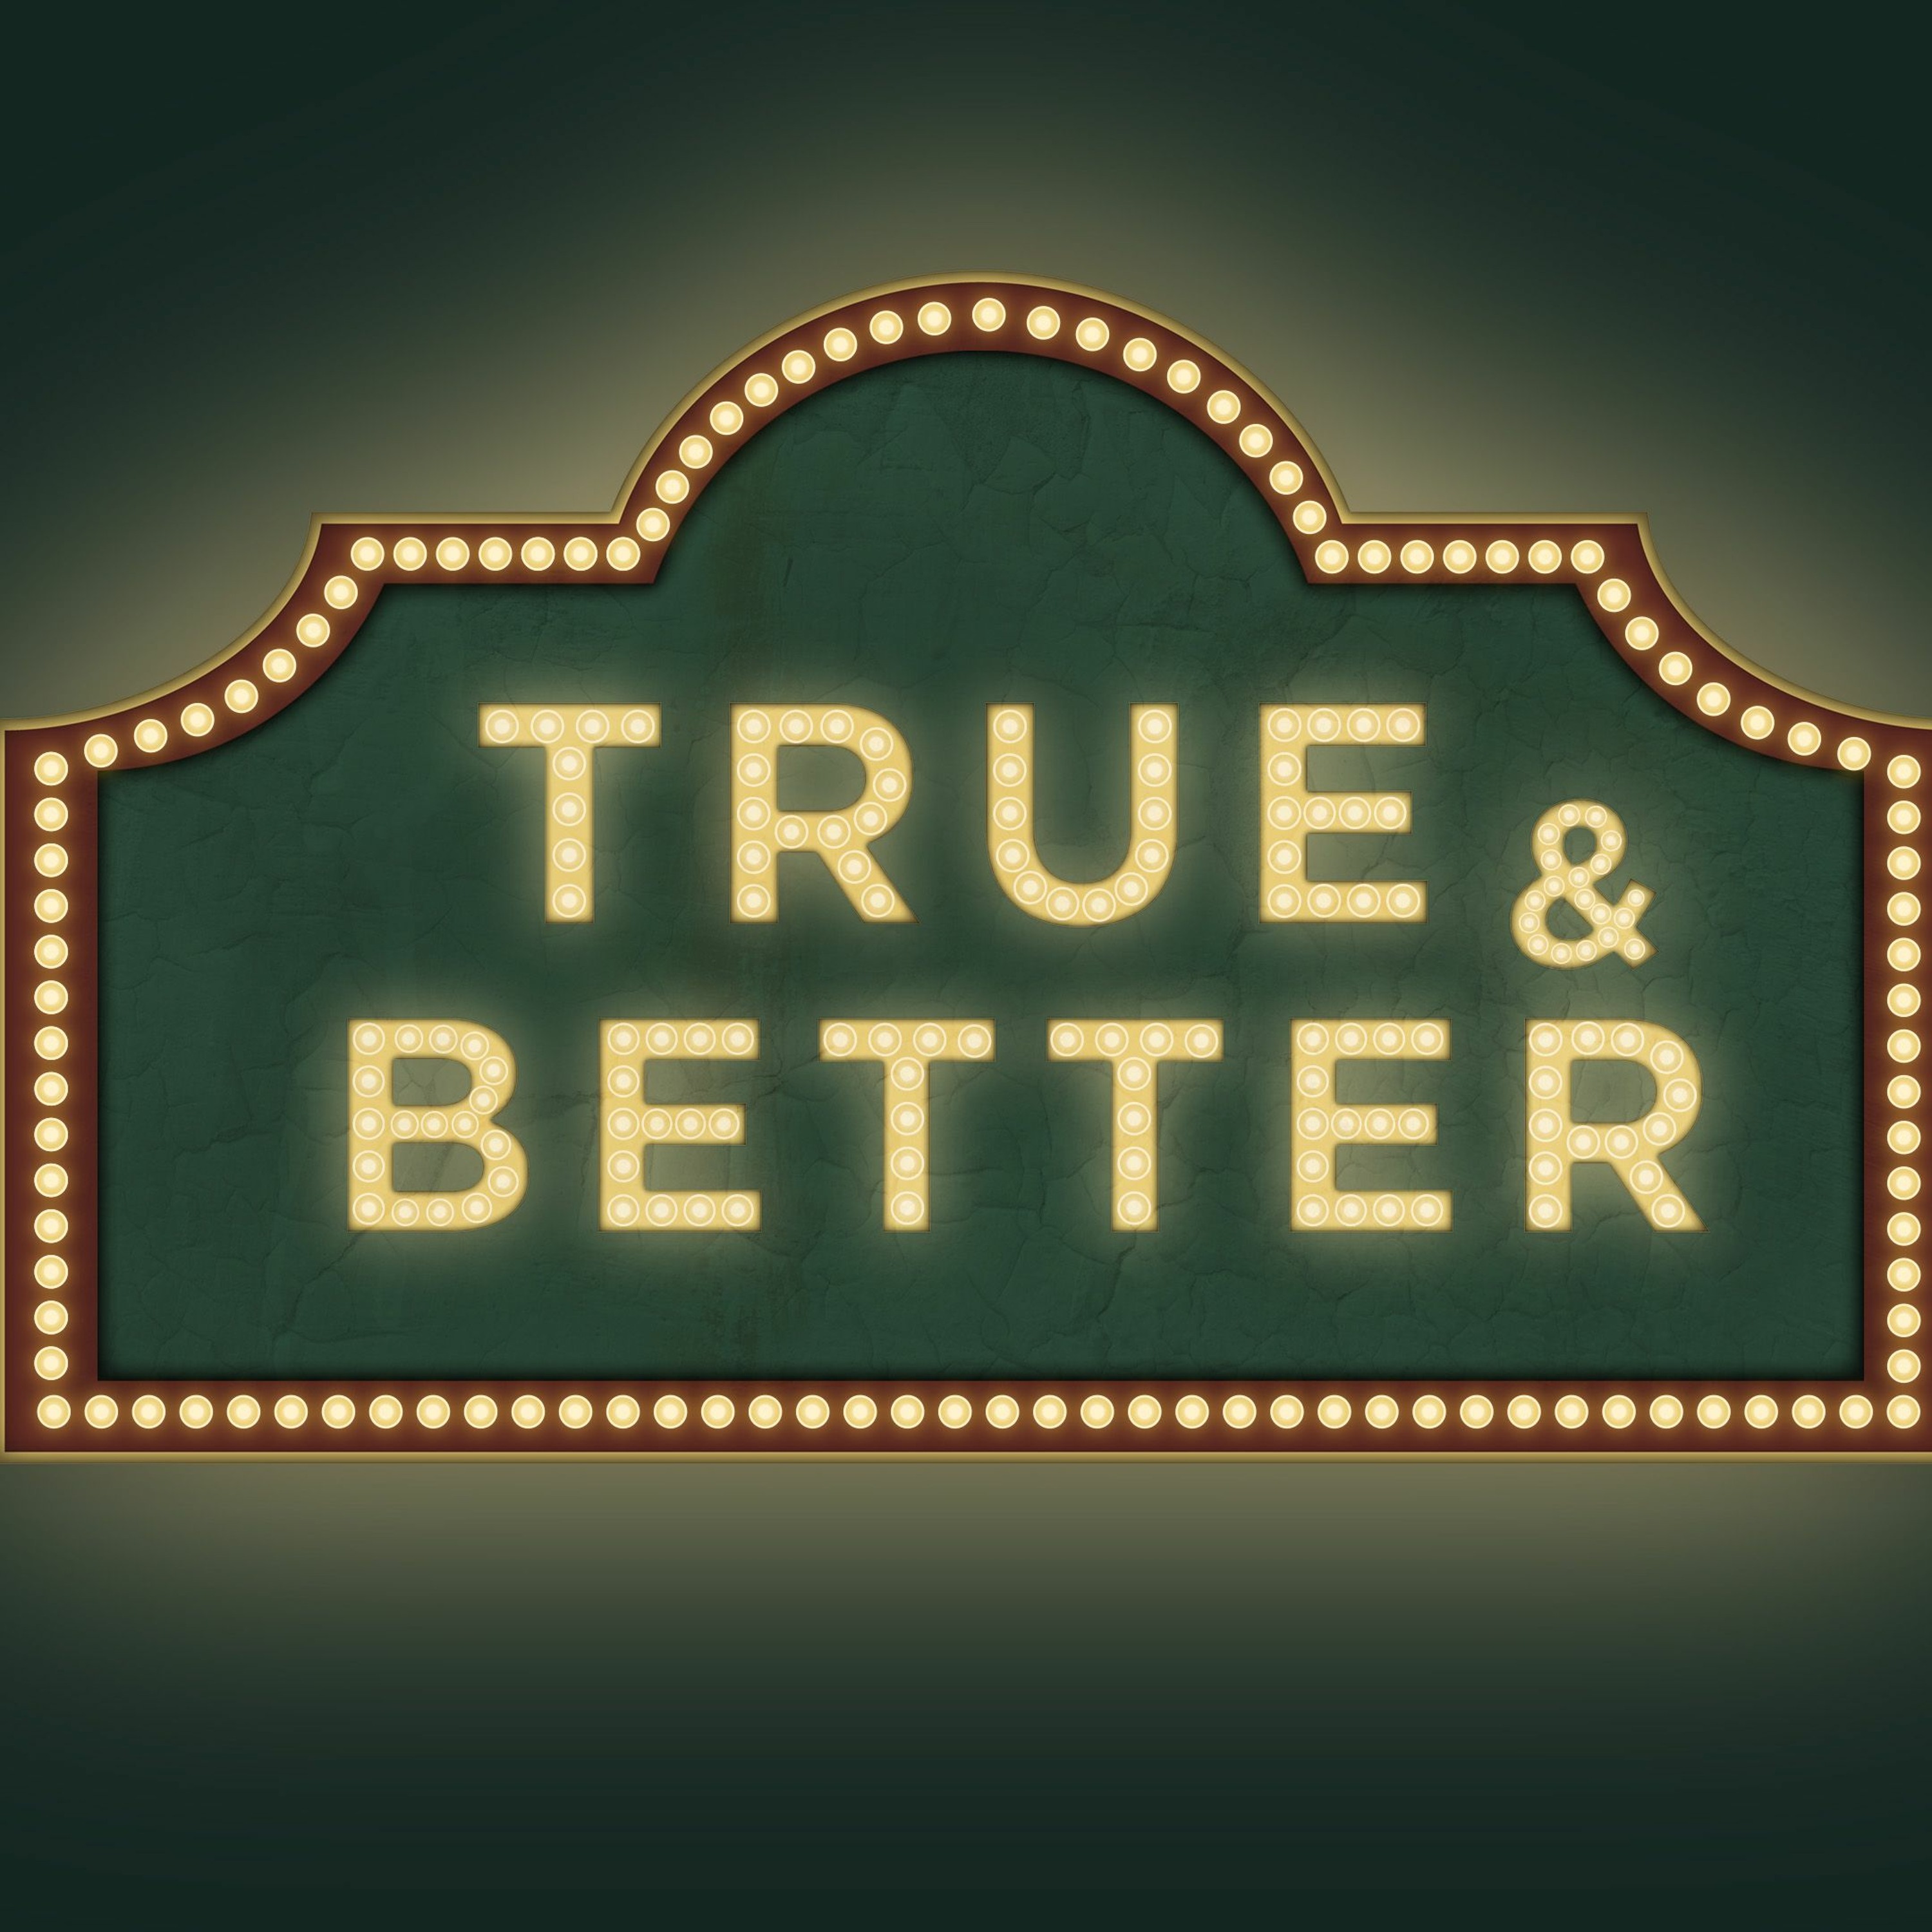 True & Better Priest | True & Better | Ethan Magness